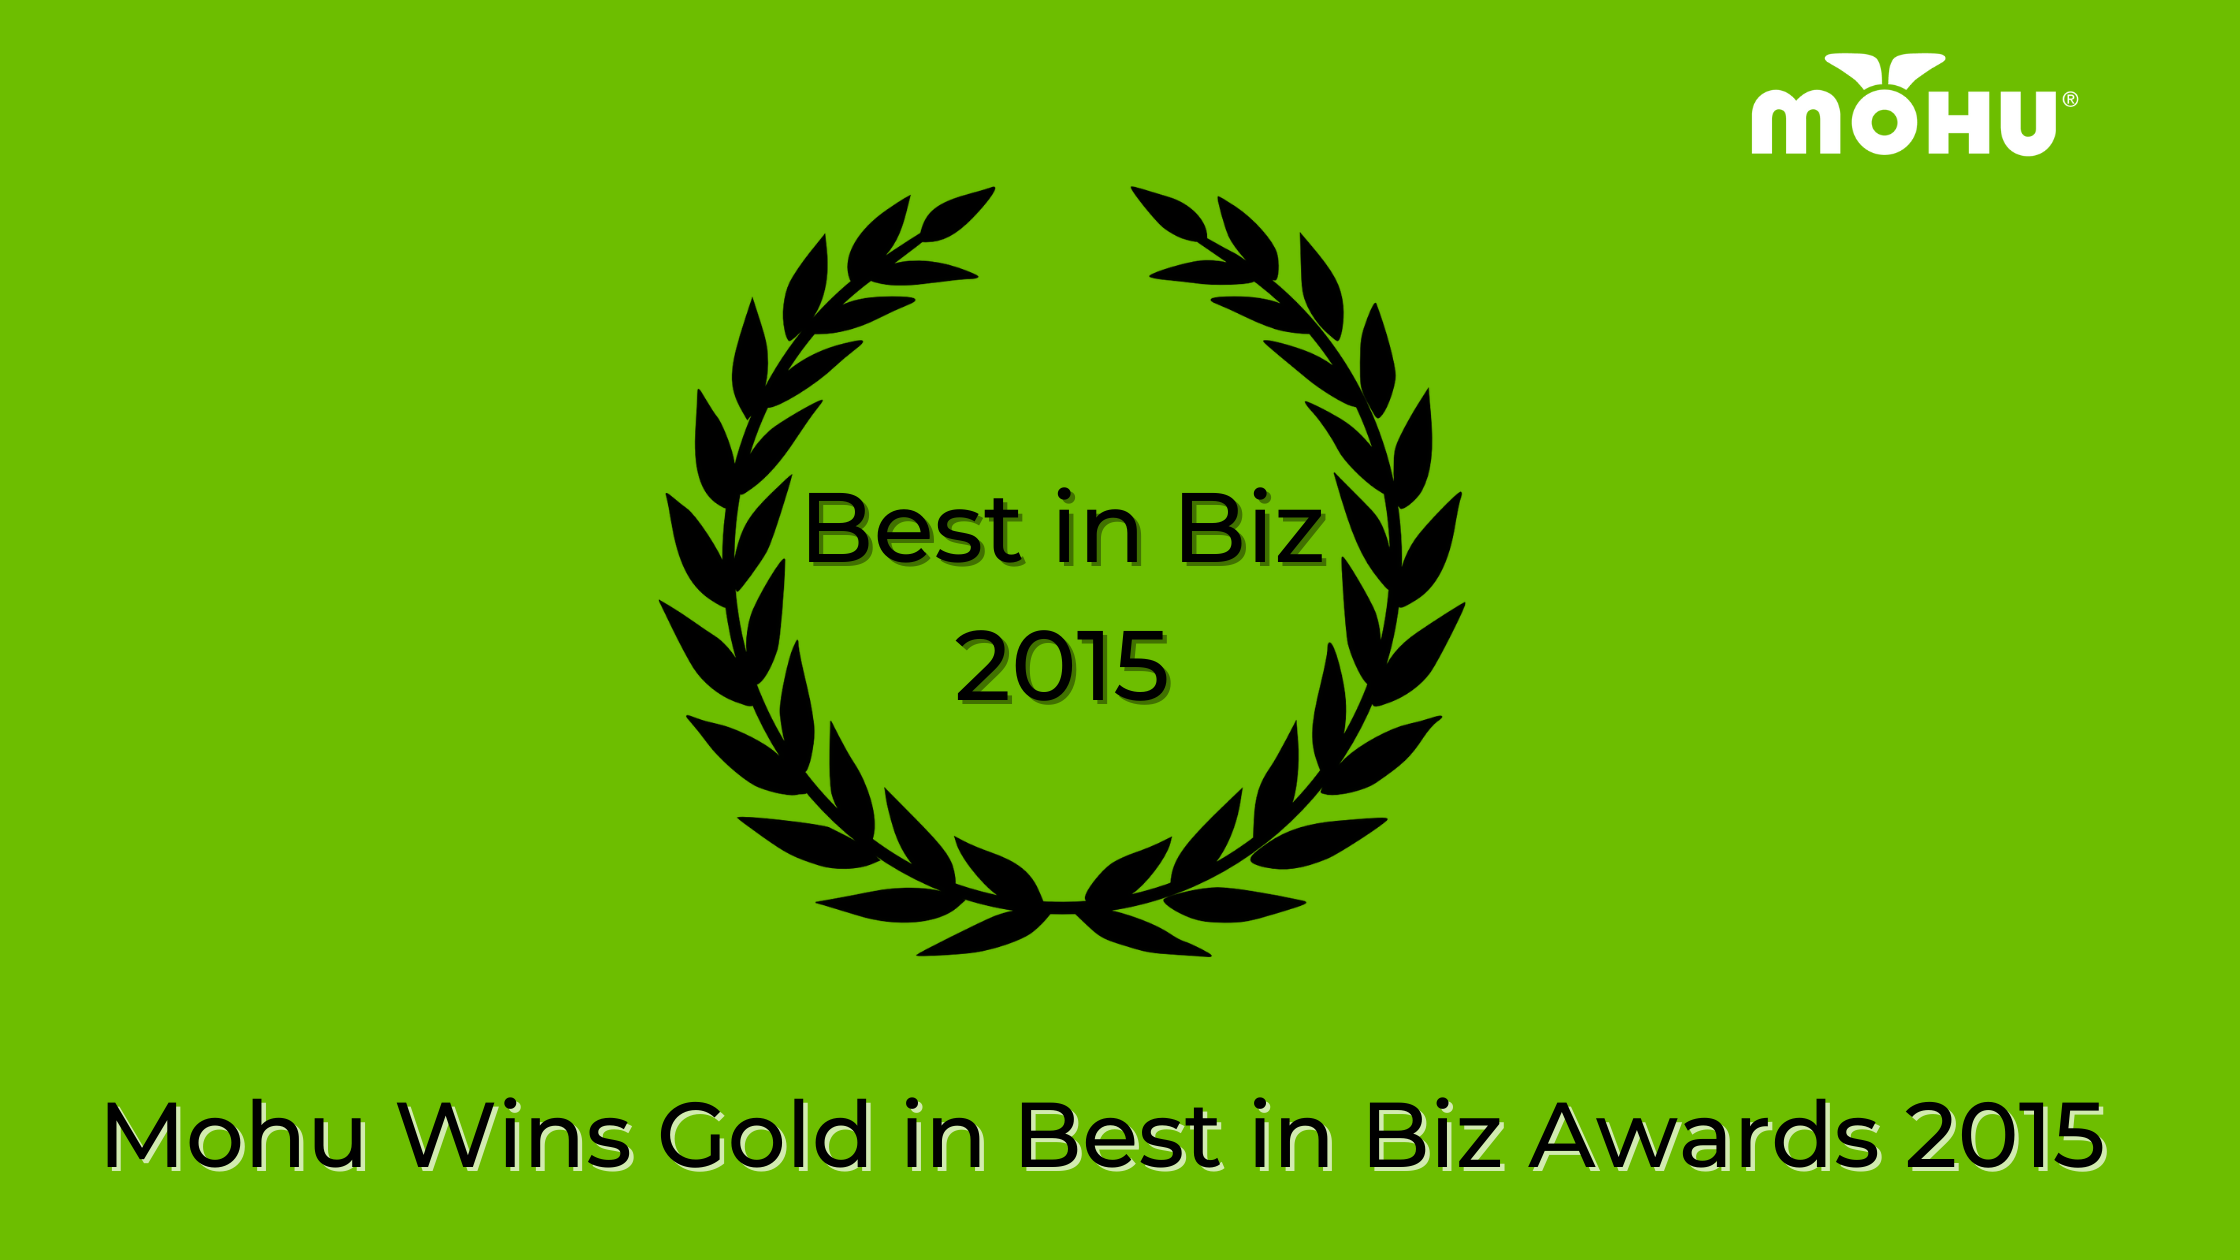 Mohu Wins Gold in Best in Biz Awards 2015